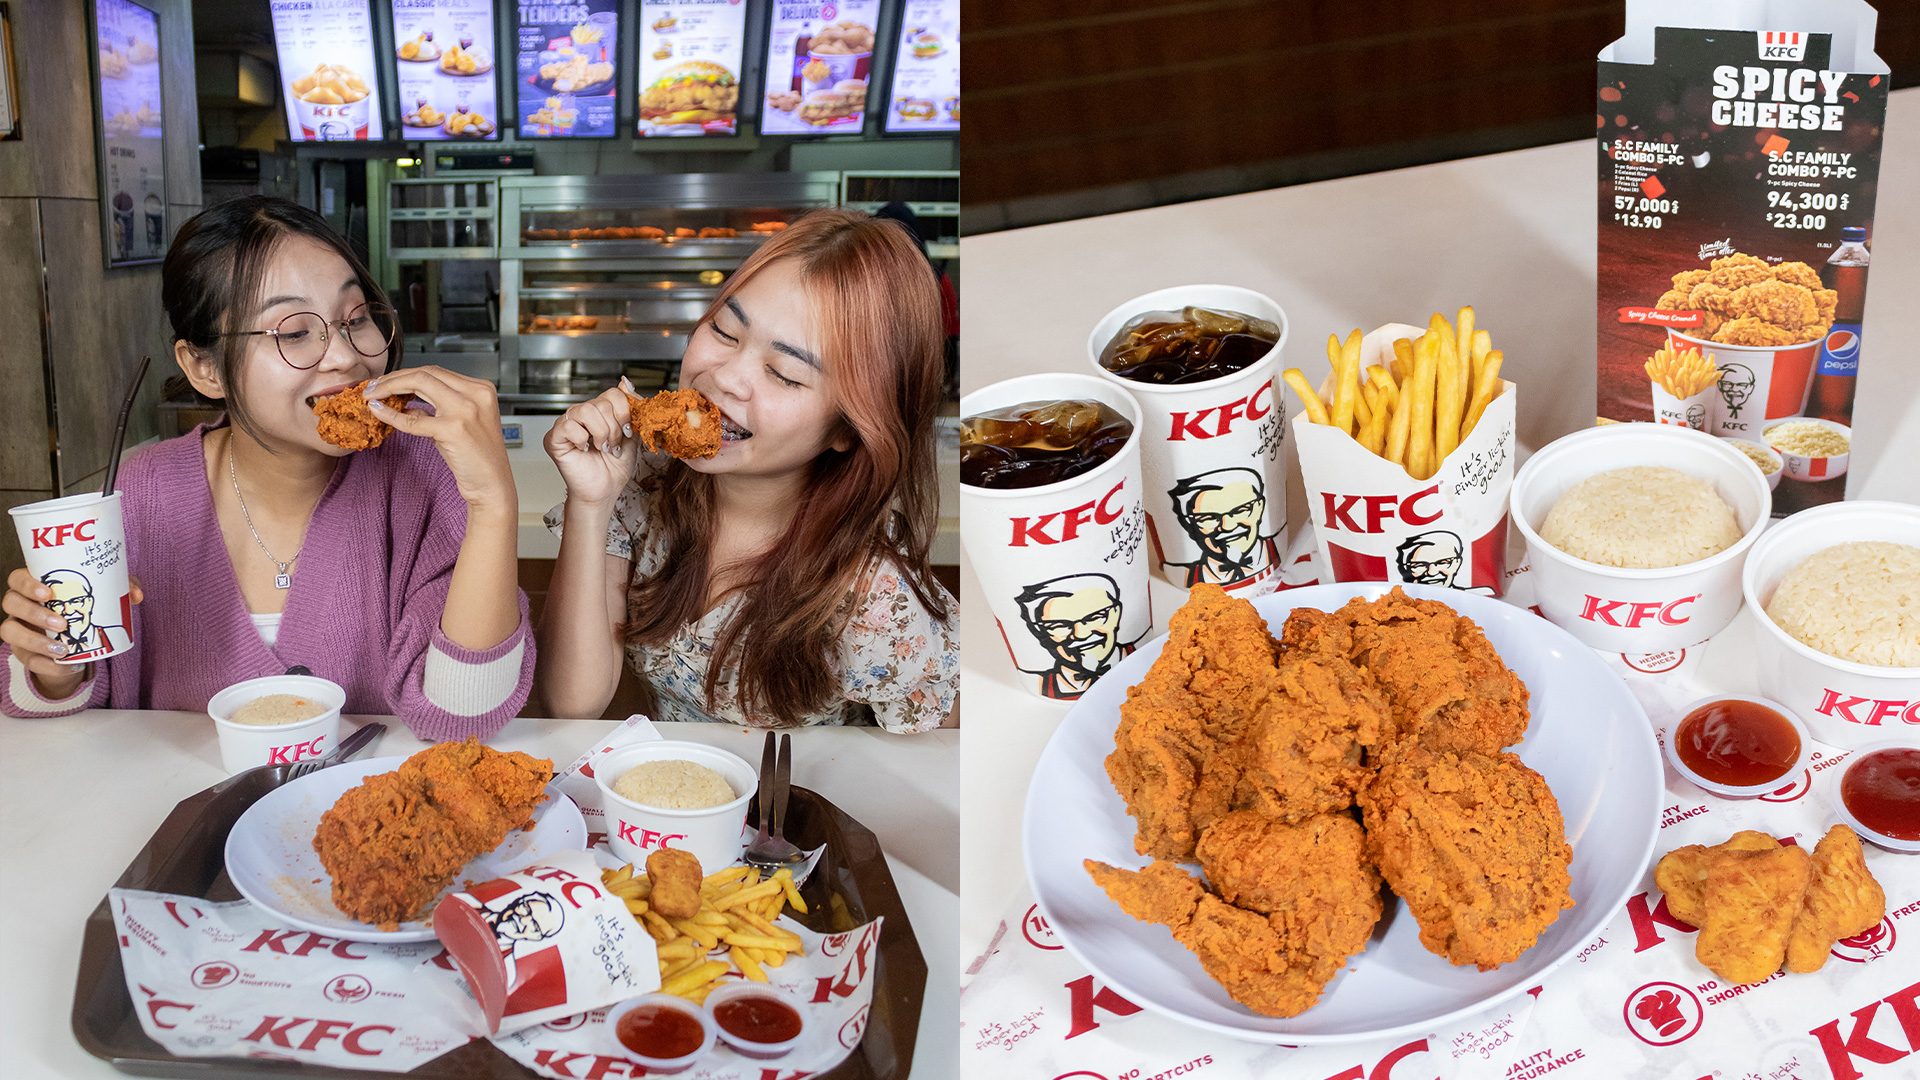 វ៉ោវ! ហឹរផង ស្រួយផង ជាមួយម៉ឺនុយថ្មី Spicy Smoky Crunch របស់ KFC!